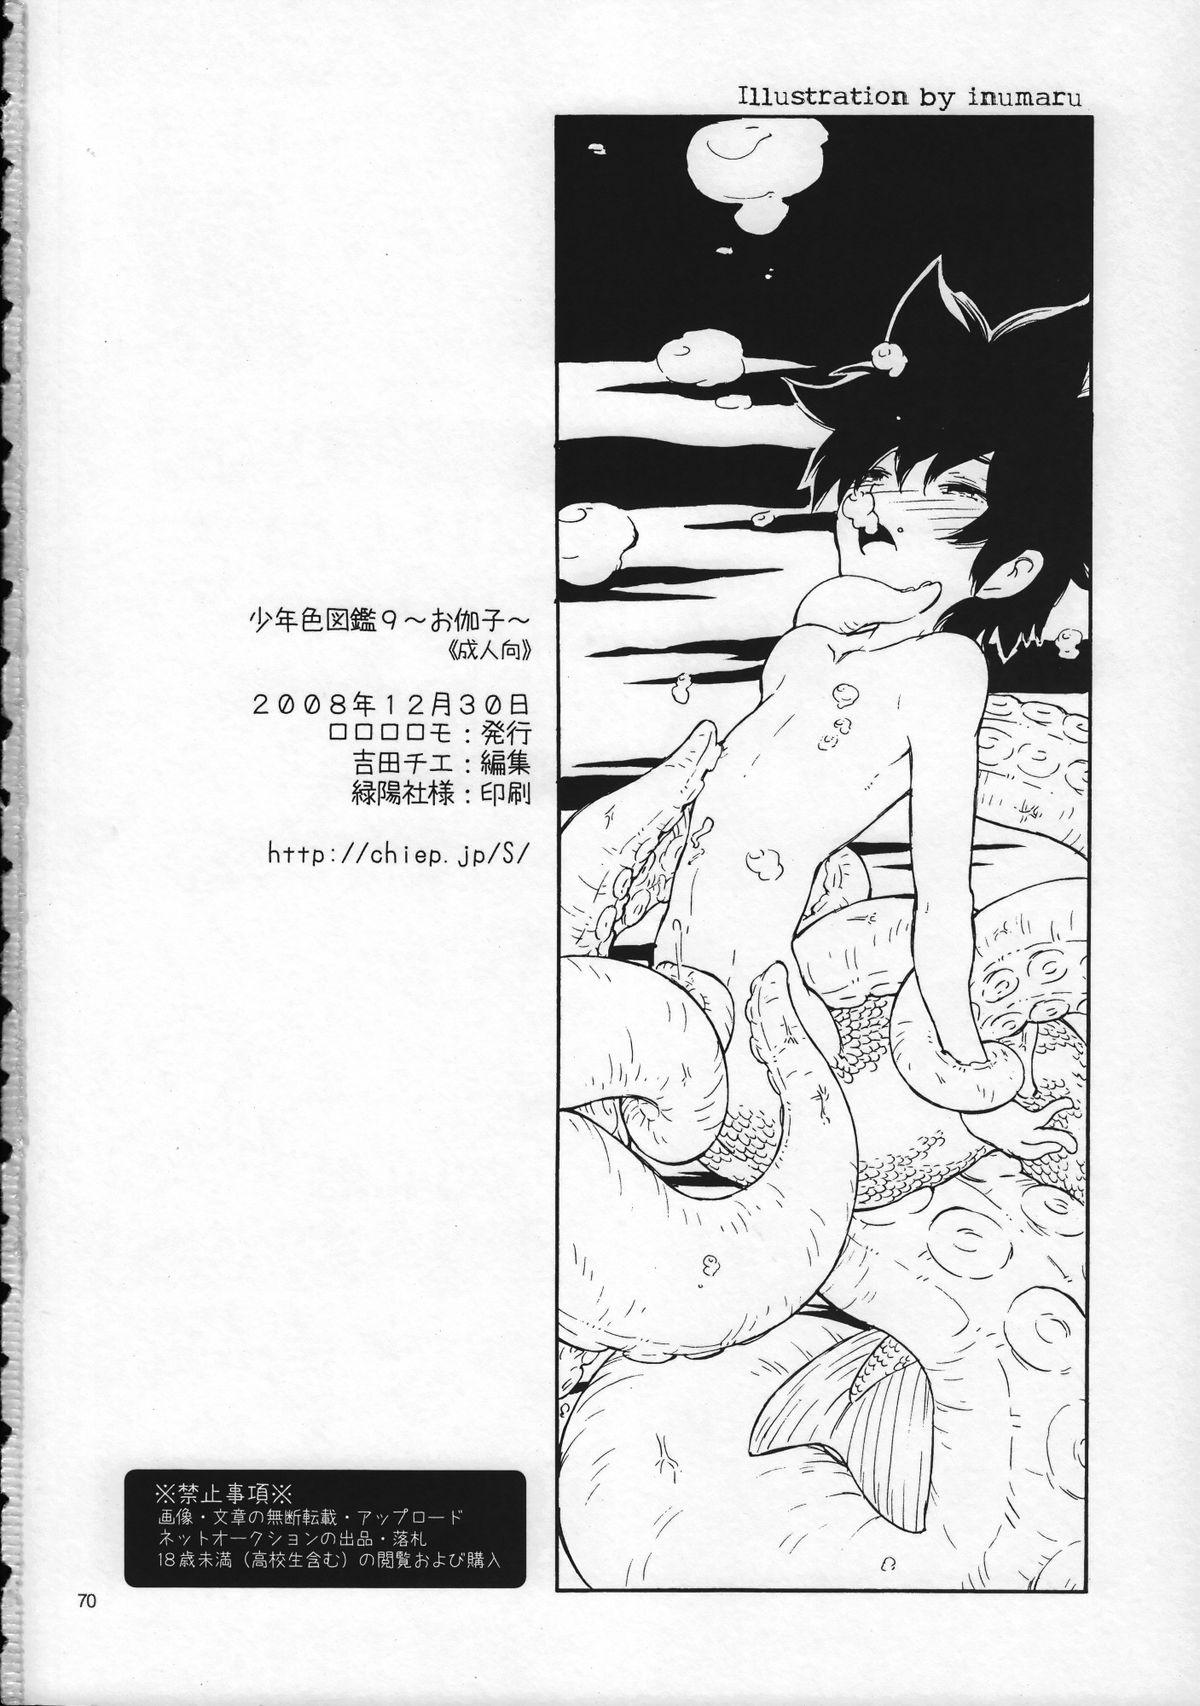 Novinhas Shounen Iro Zukan 9 Shy - Page 70